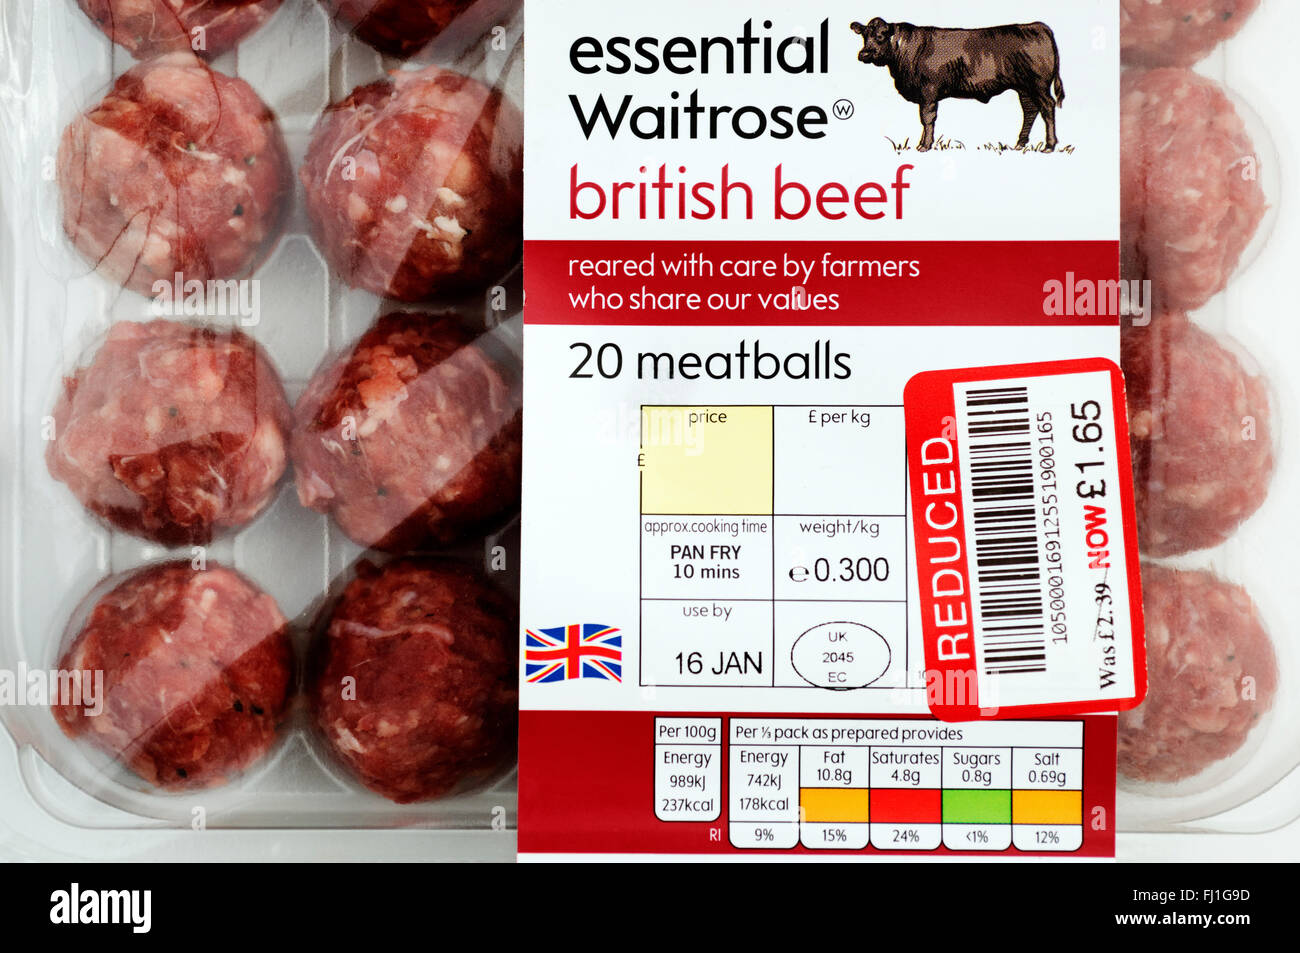 Boulette de bœuf britannique Waitrose essentiel avec réduction de prix en raison de sa situation près d'utiliser par date Banque D'Images